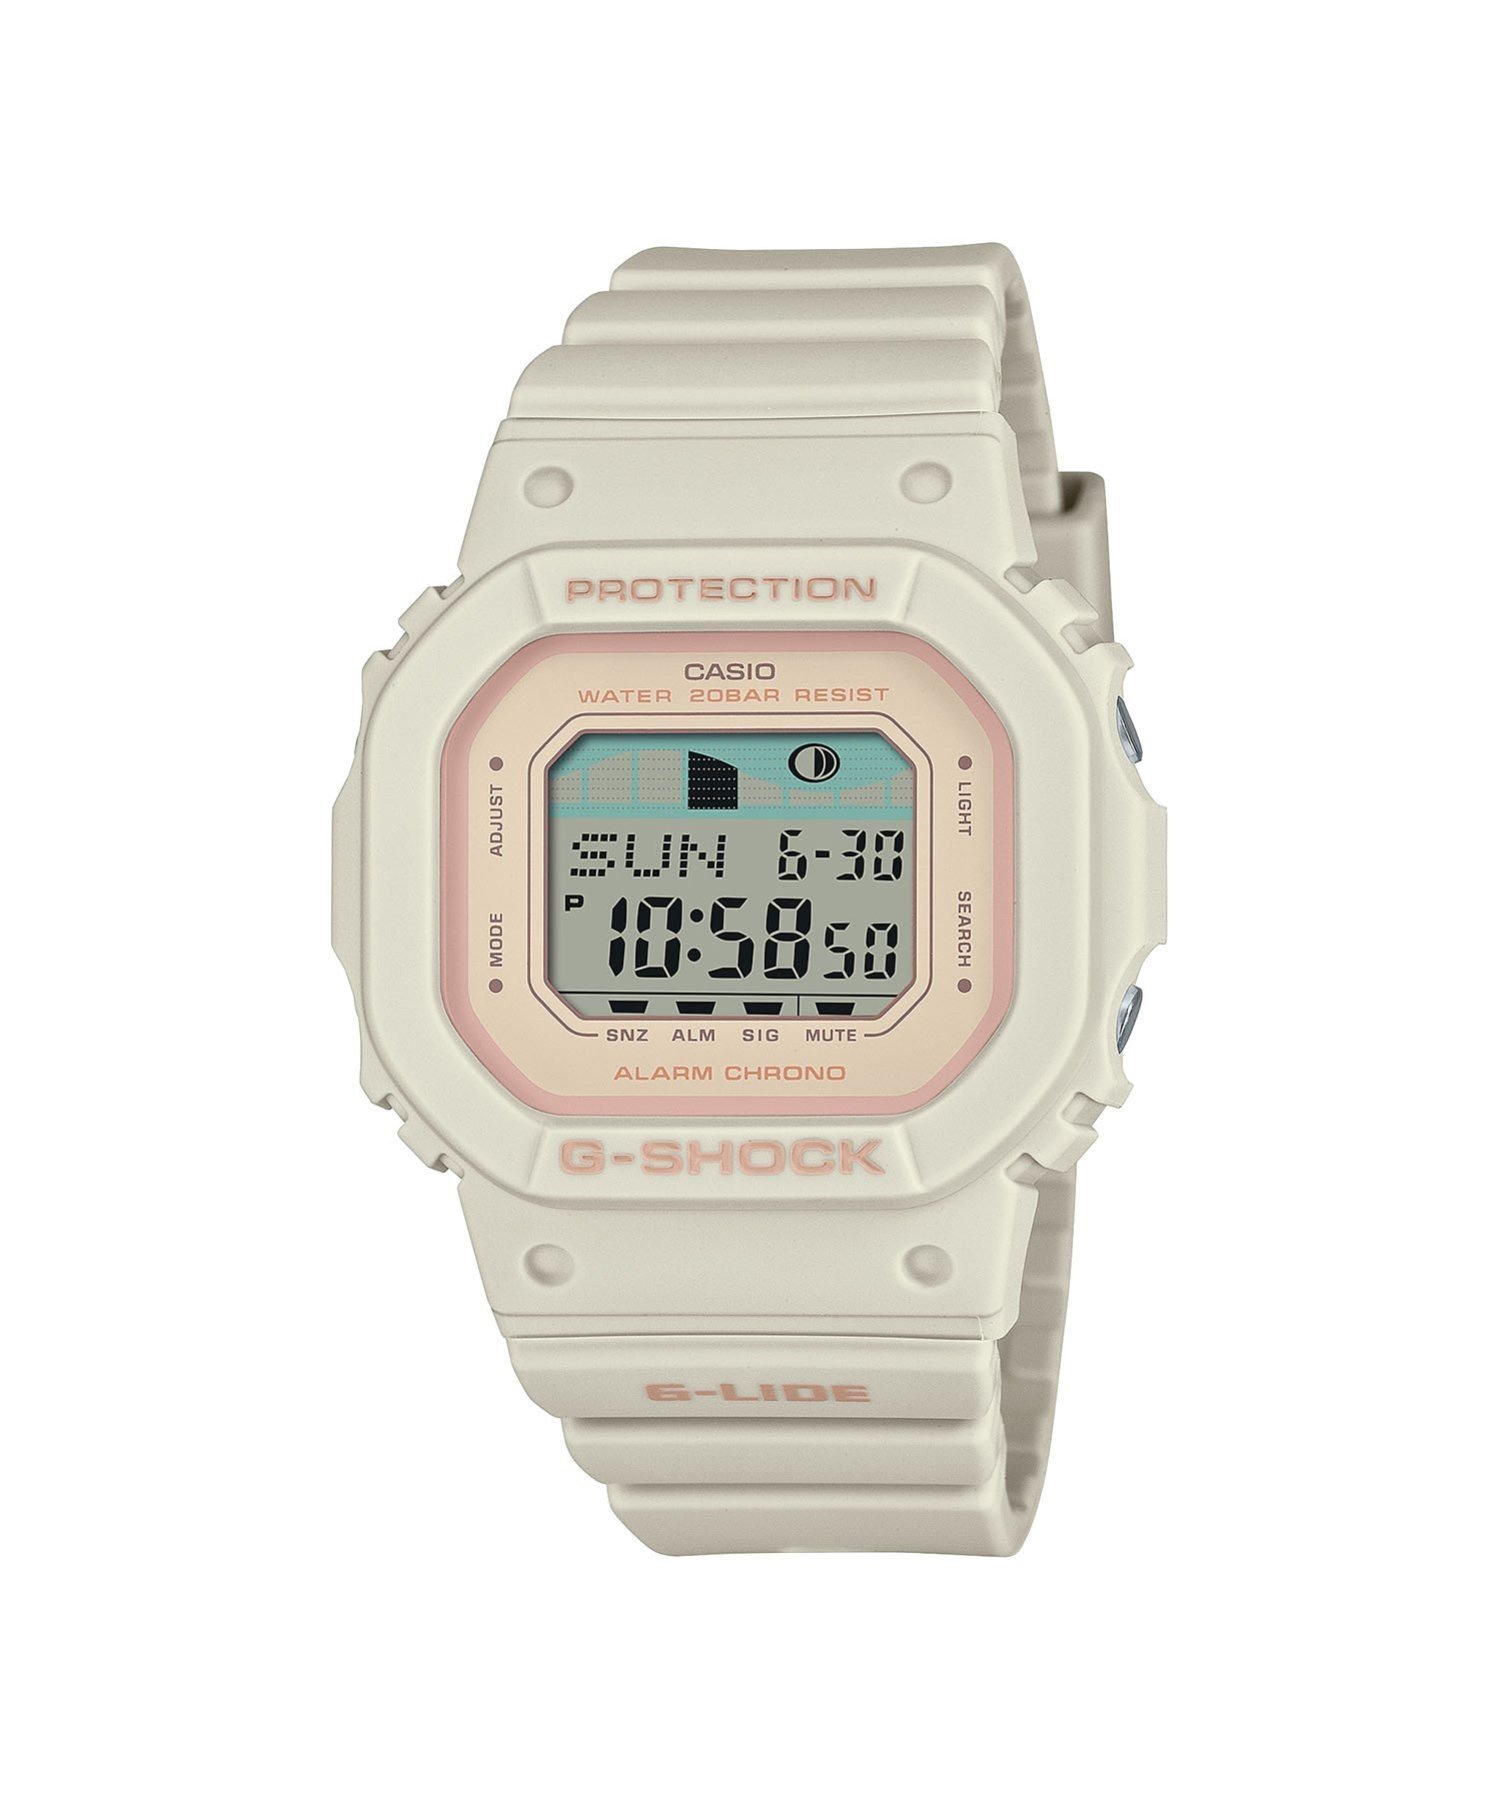 楽天Rakuten FashionG-SHOCK G-SHOCK/GLX-S5600-7JF/カシオ ブリッジ アクセサリー・腕時計 腕時計 ホワイト【送料無料】